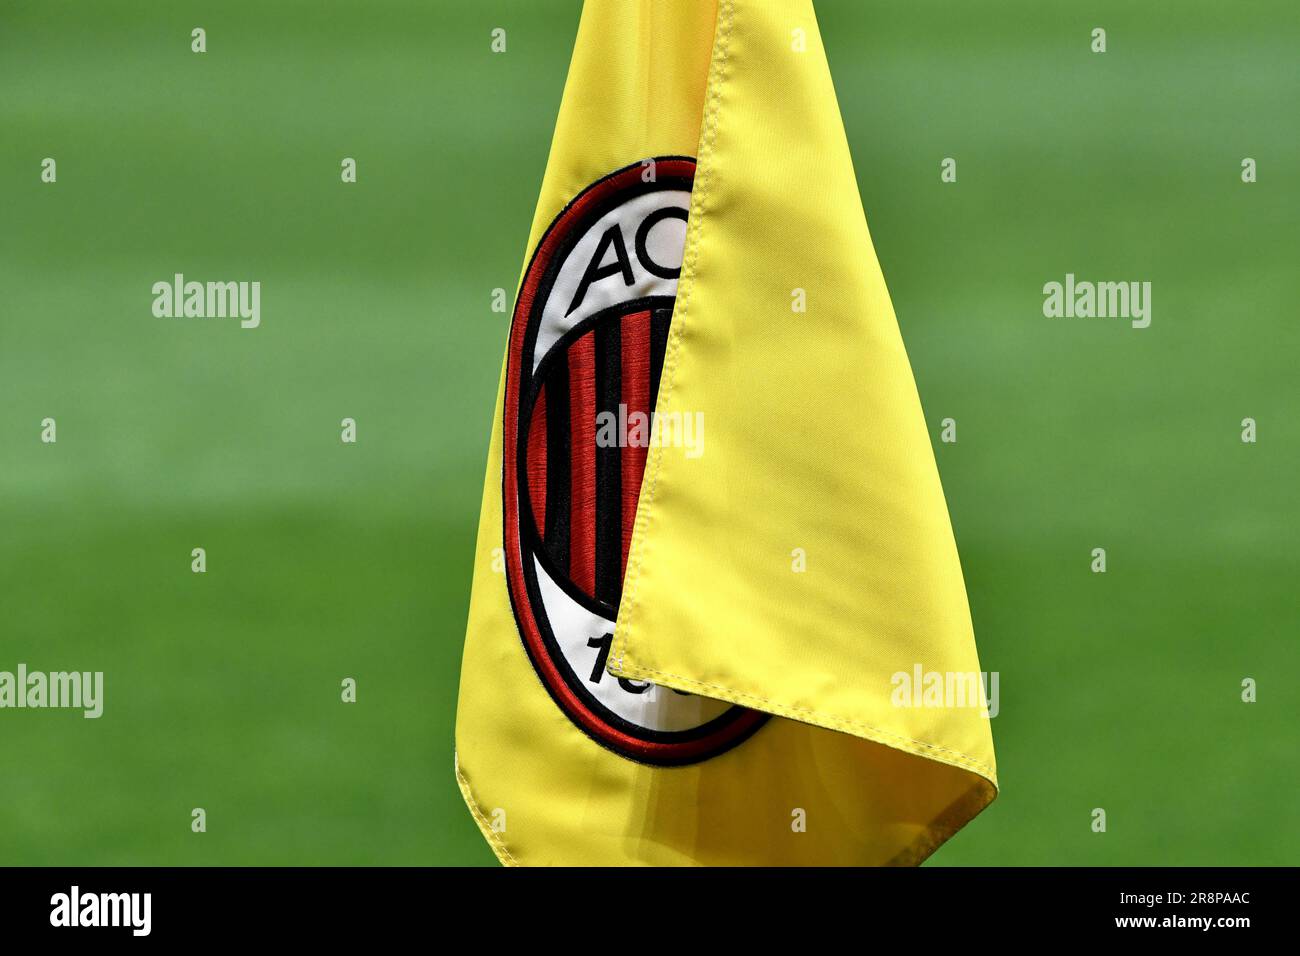 Logo AC Milan sur le drapeau d'angle jaune Banque D'Images